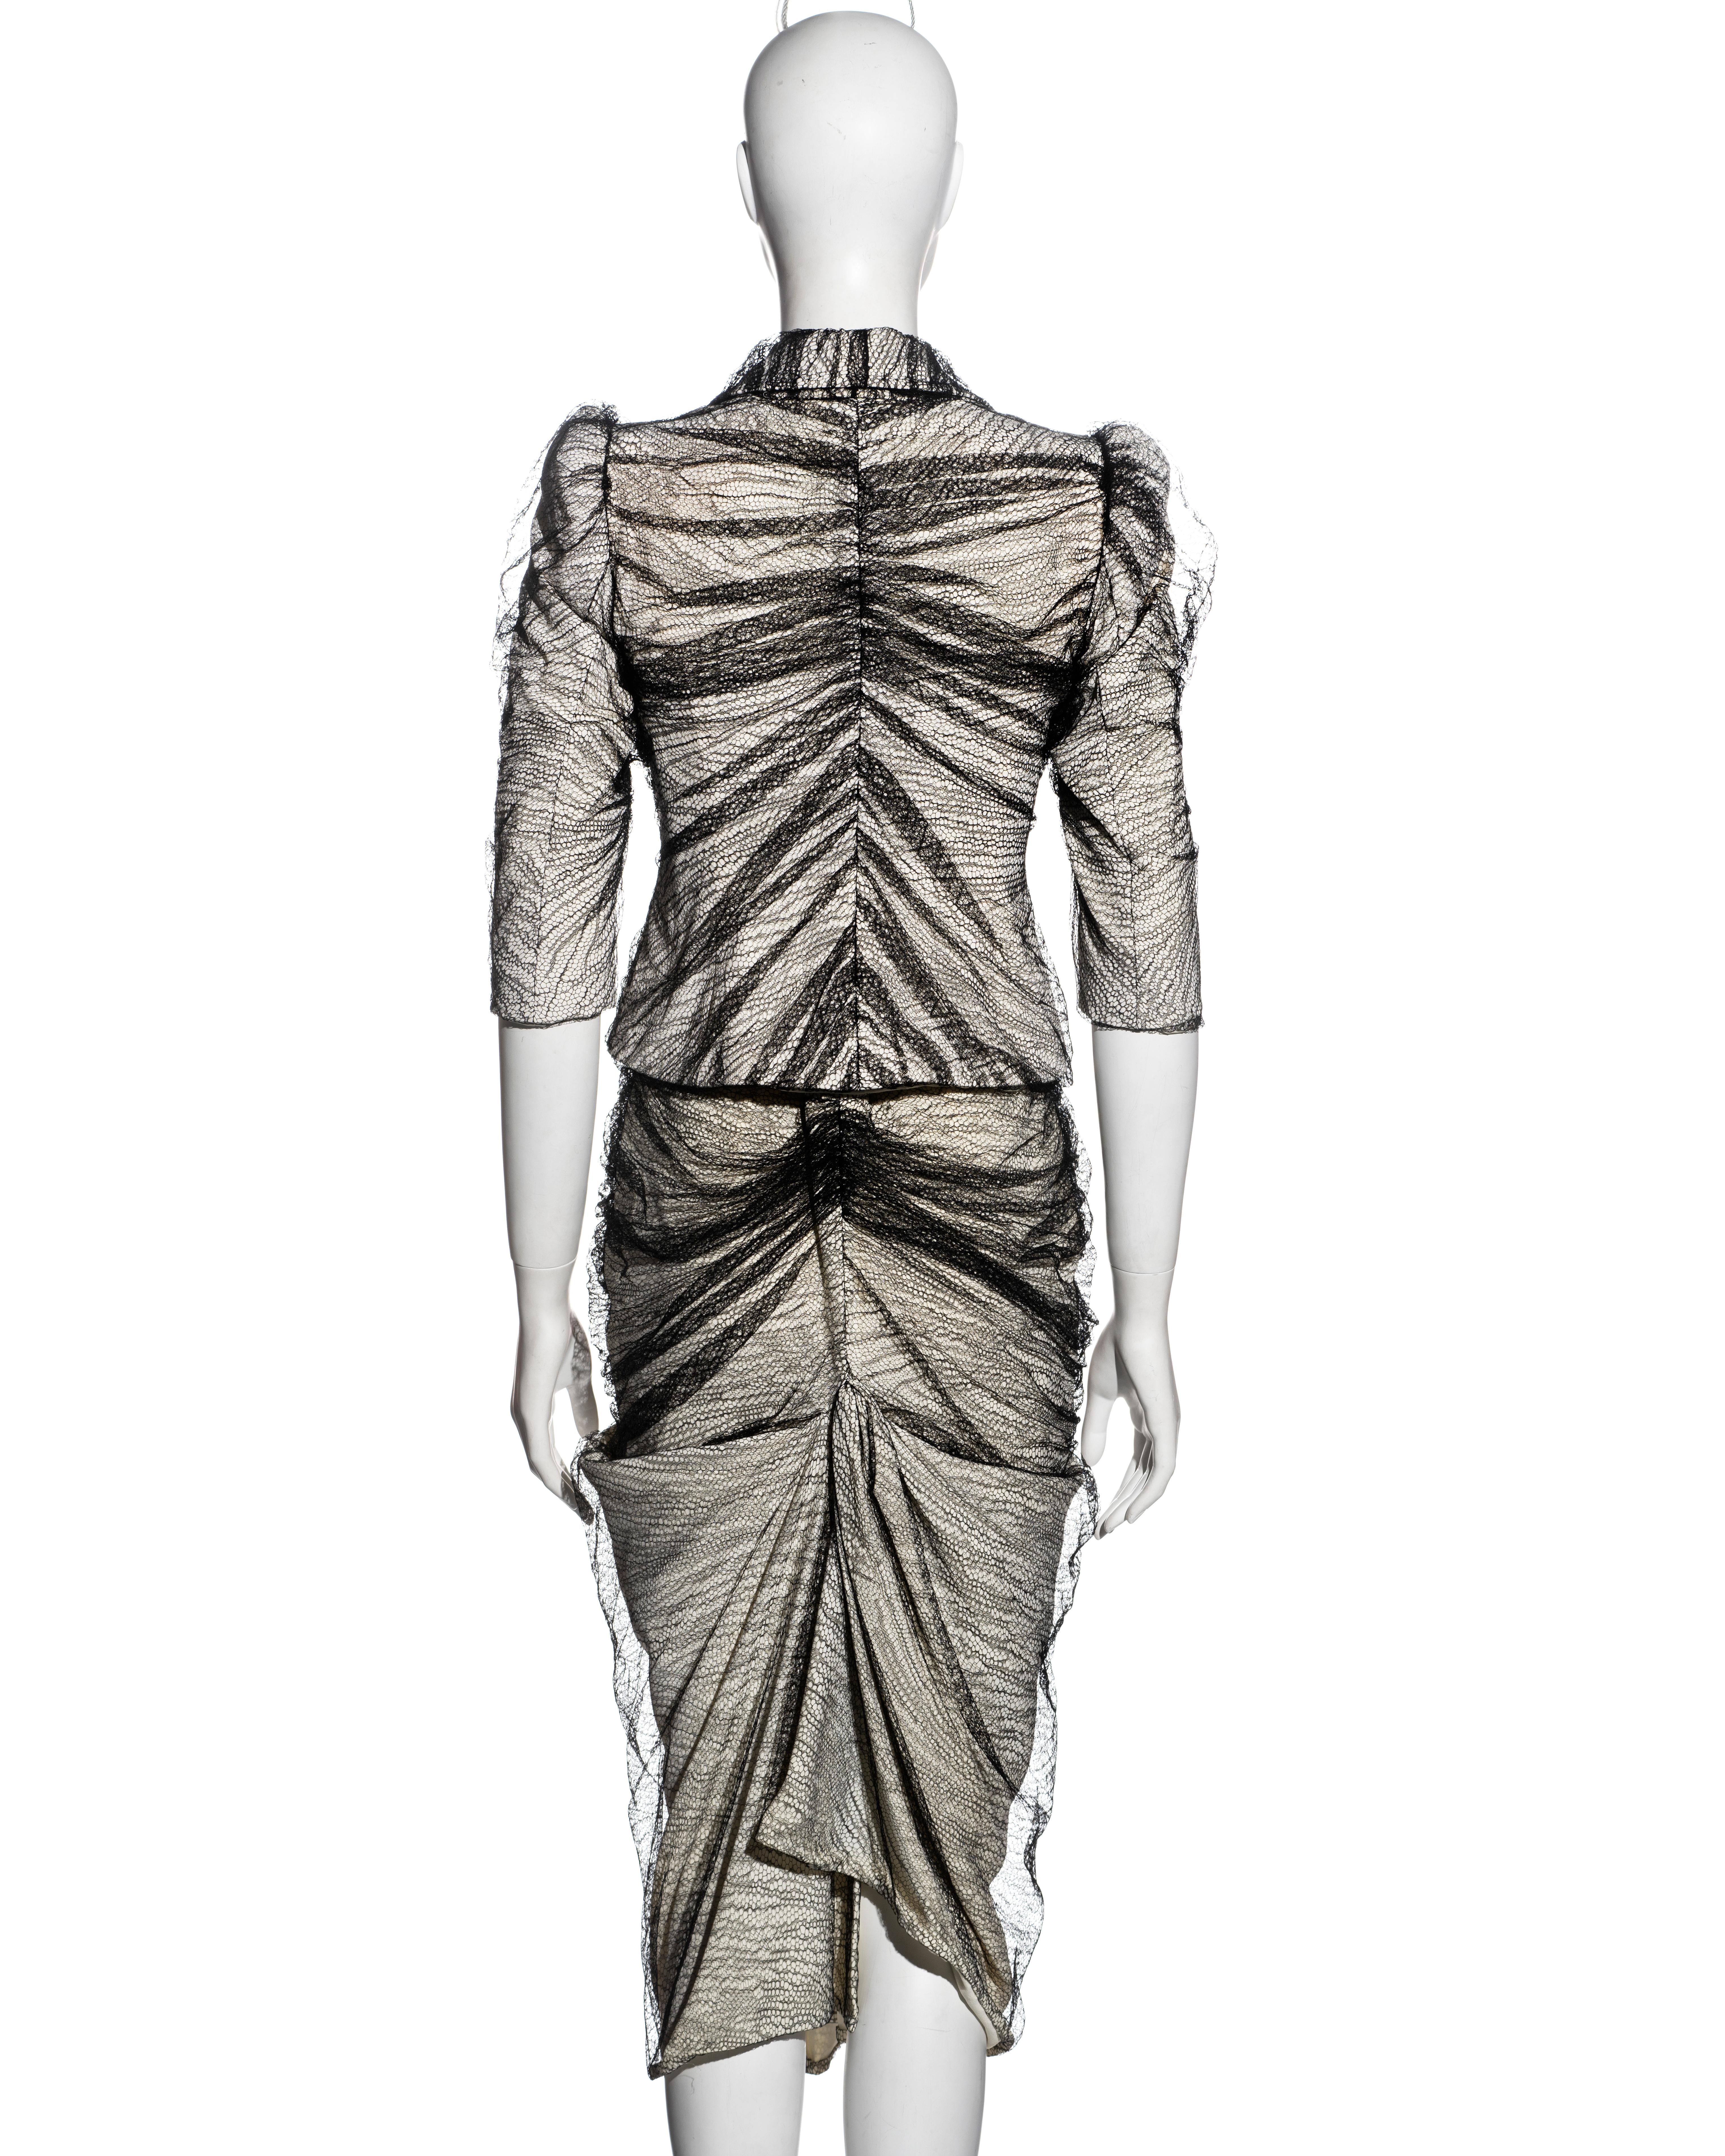 Alexander McQueen 'Sarabande' skirt suit, ss 2007 1